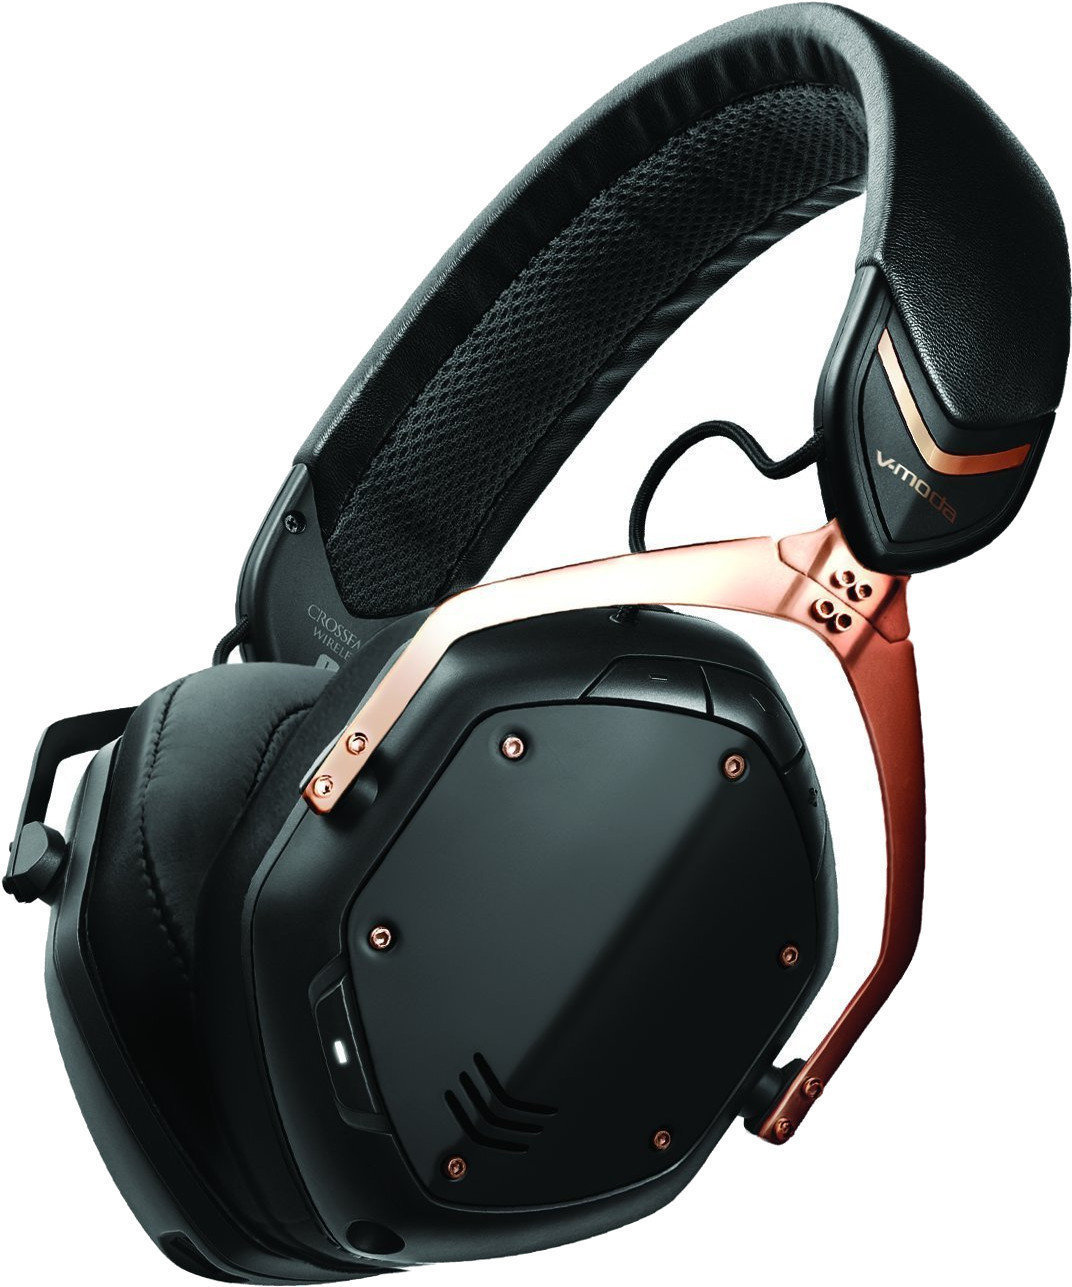 Słuchawki bezprzewodowe On-ear V-Moda Crossfade 2 Wireless Rose Gold Black